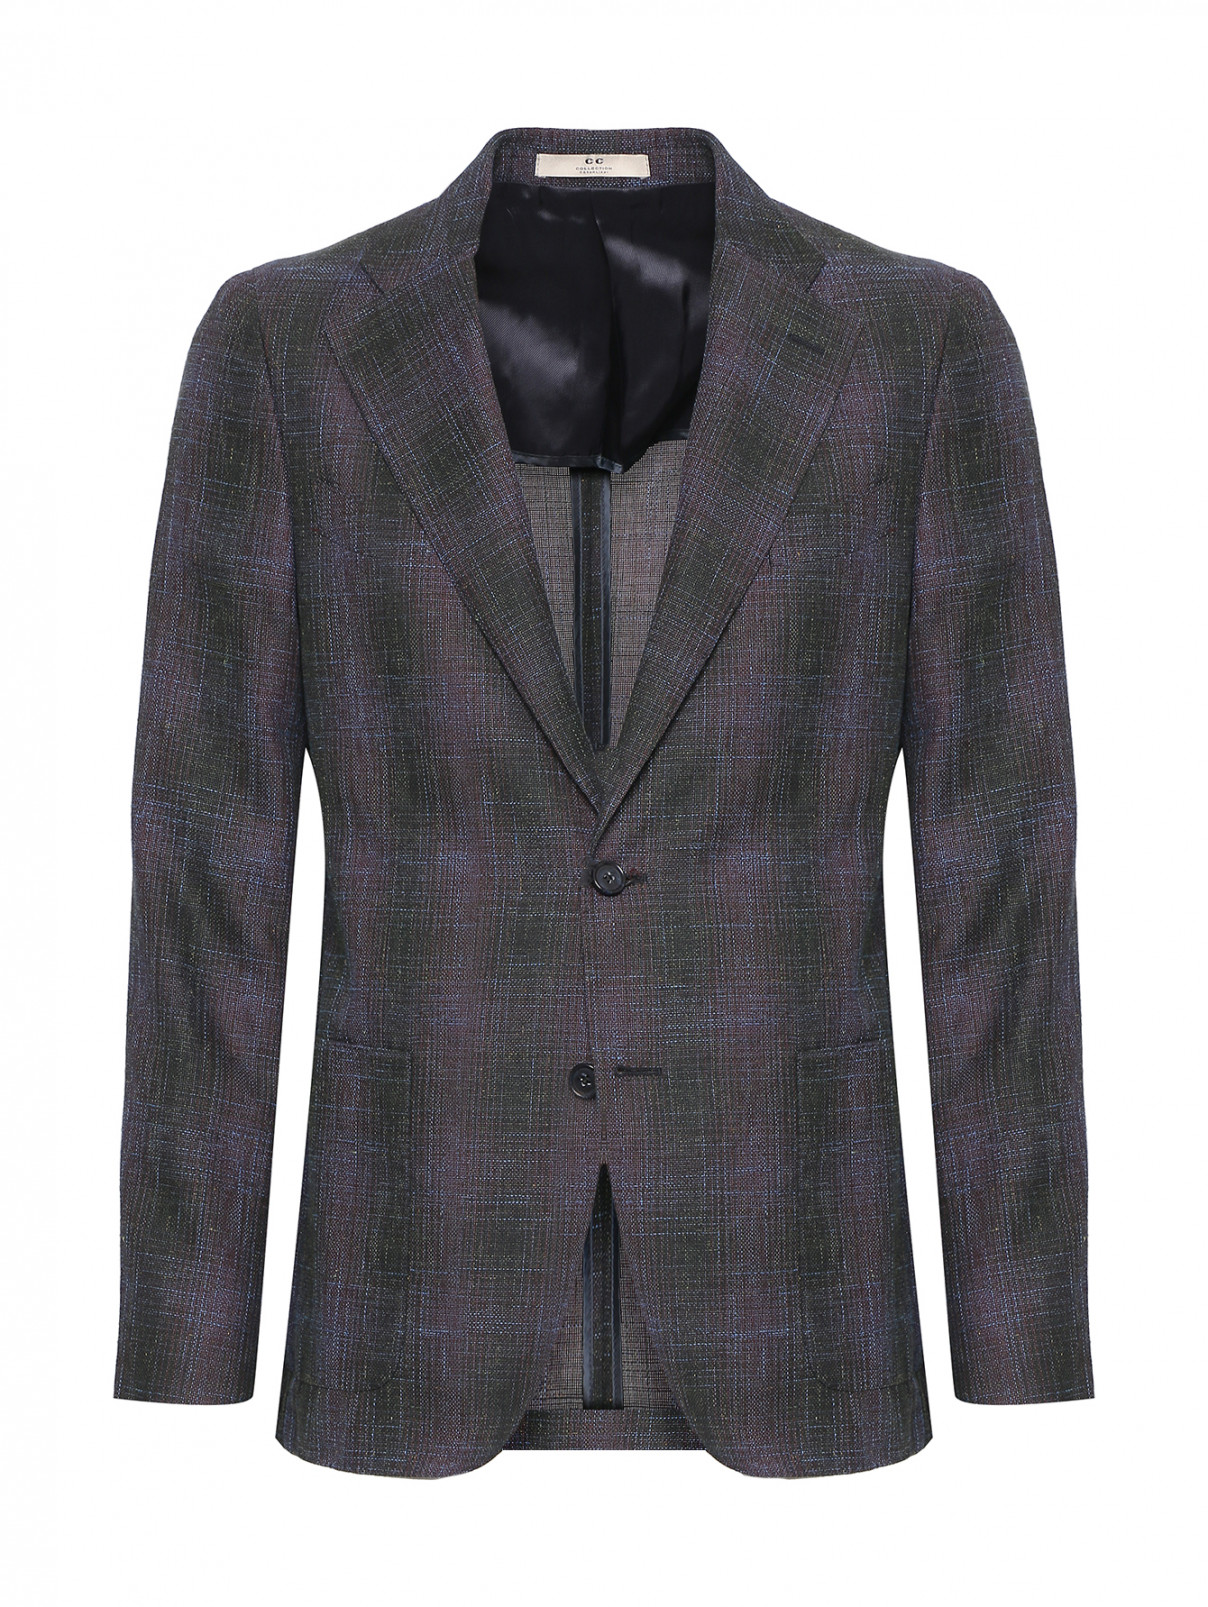 Пиджак из шерсти, хлопка и льна CC Corneliani  –  Общий вид  – Цвет:  Фиолетовый